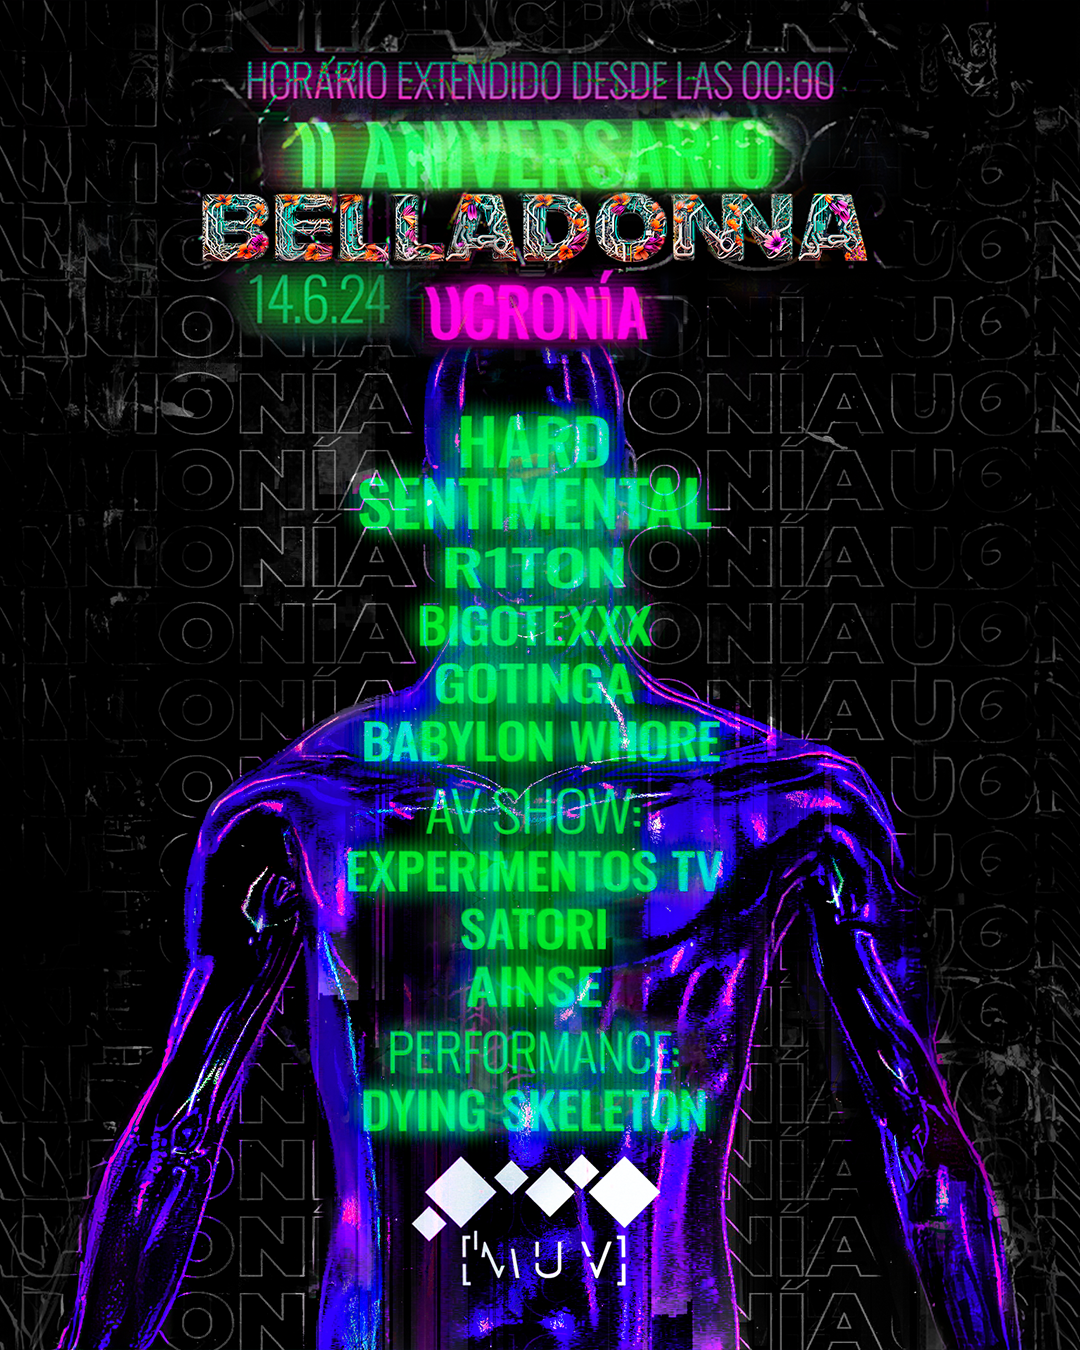 Belladonna - II Aniversario // UCRONÍA - フライヤー表